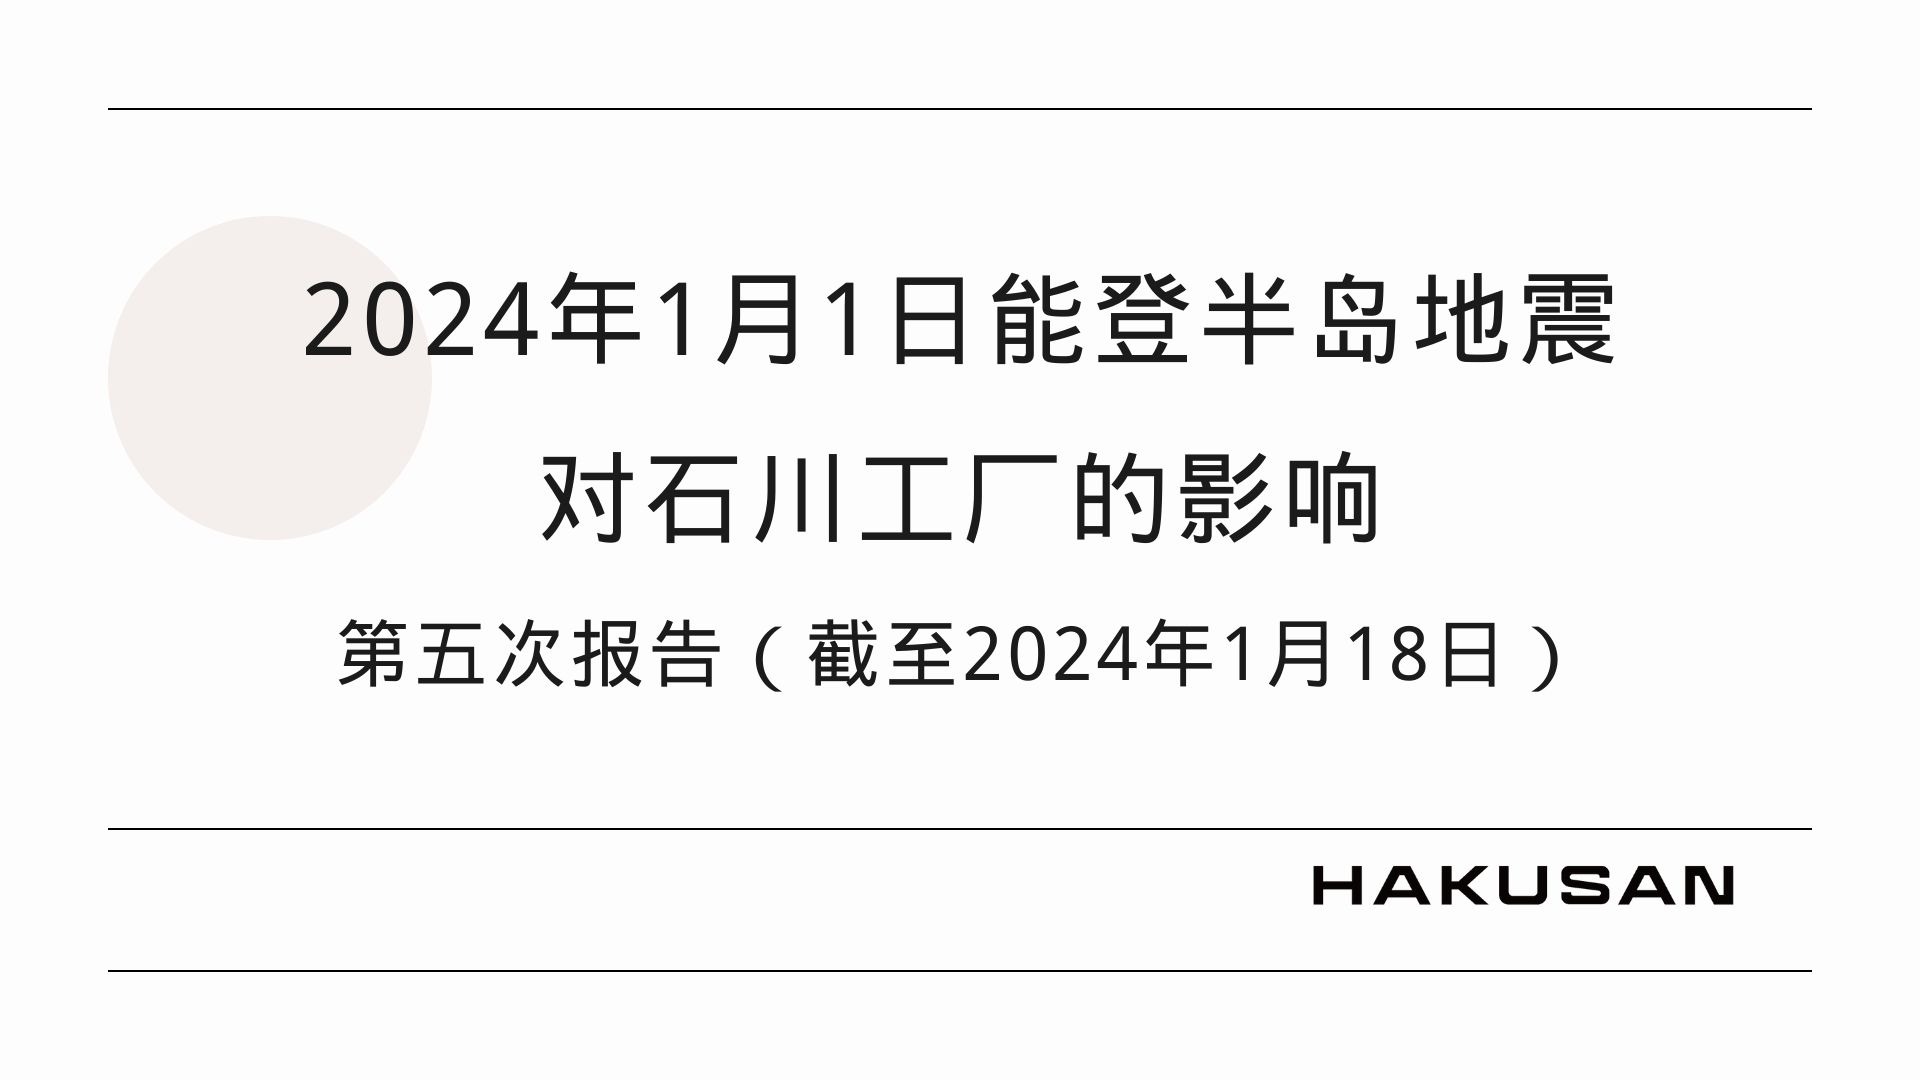 关于2024年能登半岛地震对石川工厂的影响 (第五报_截至2024年1月18日)